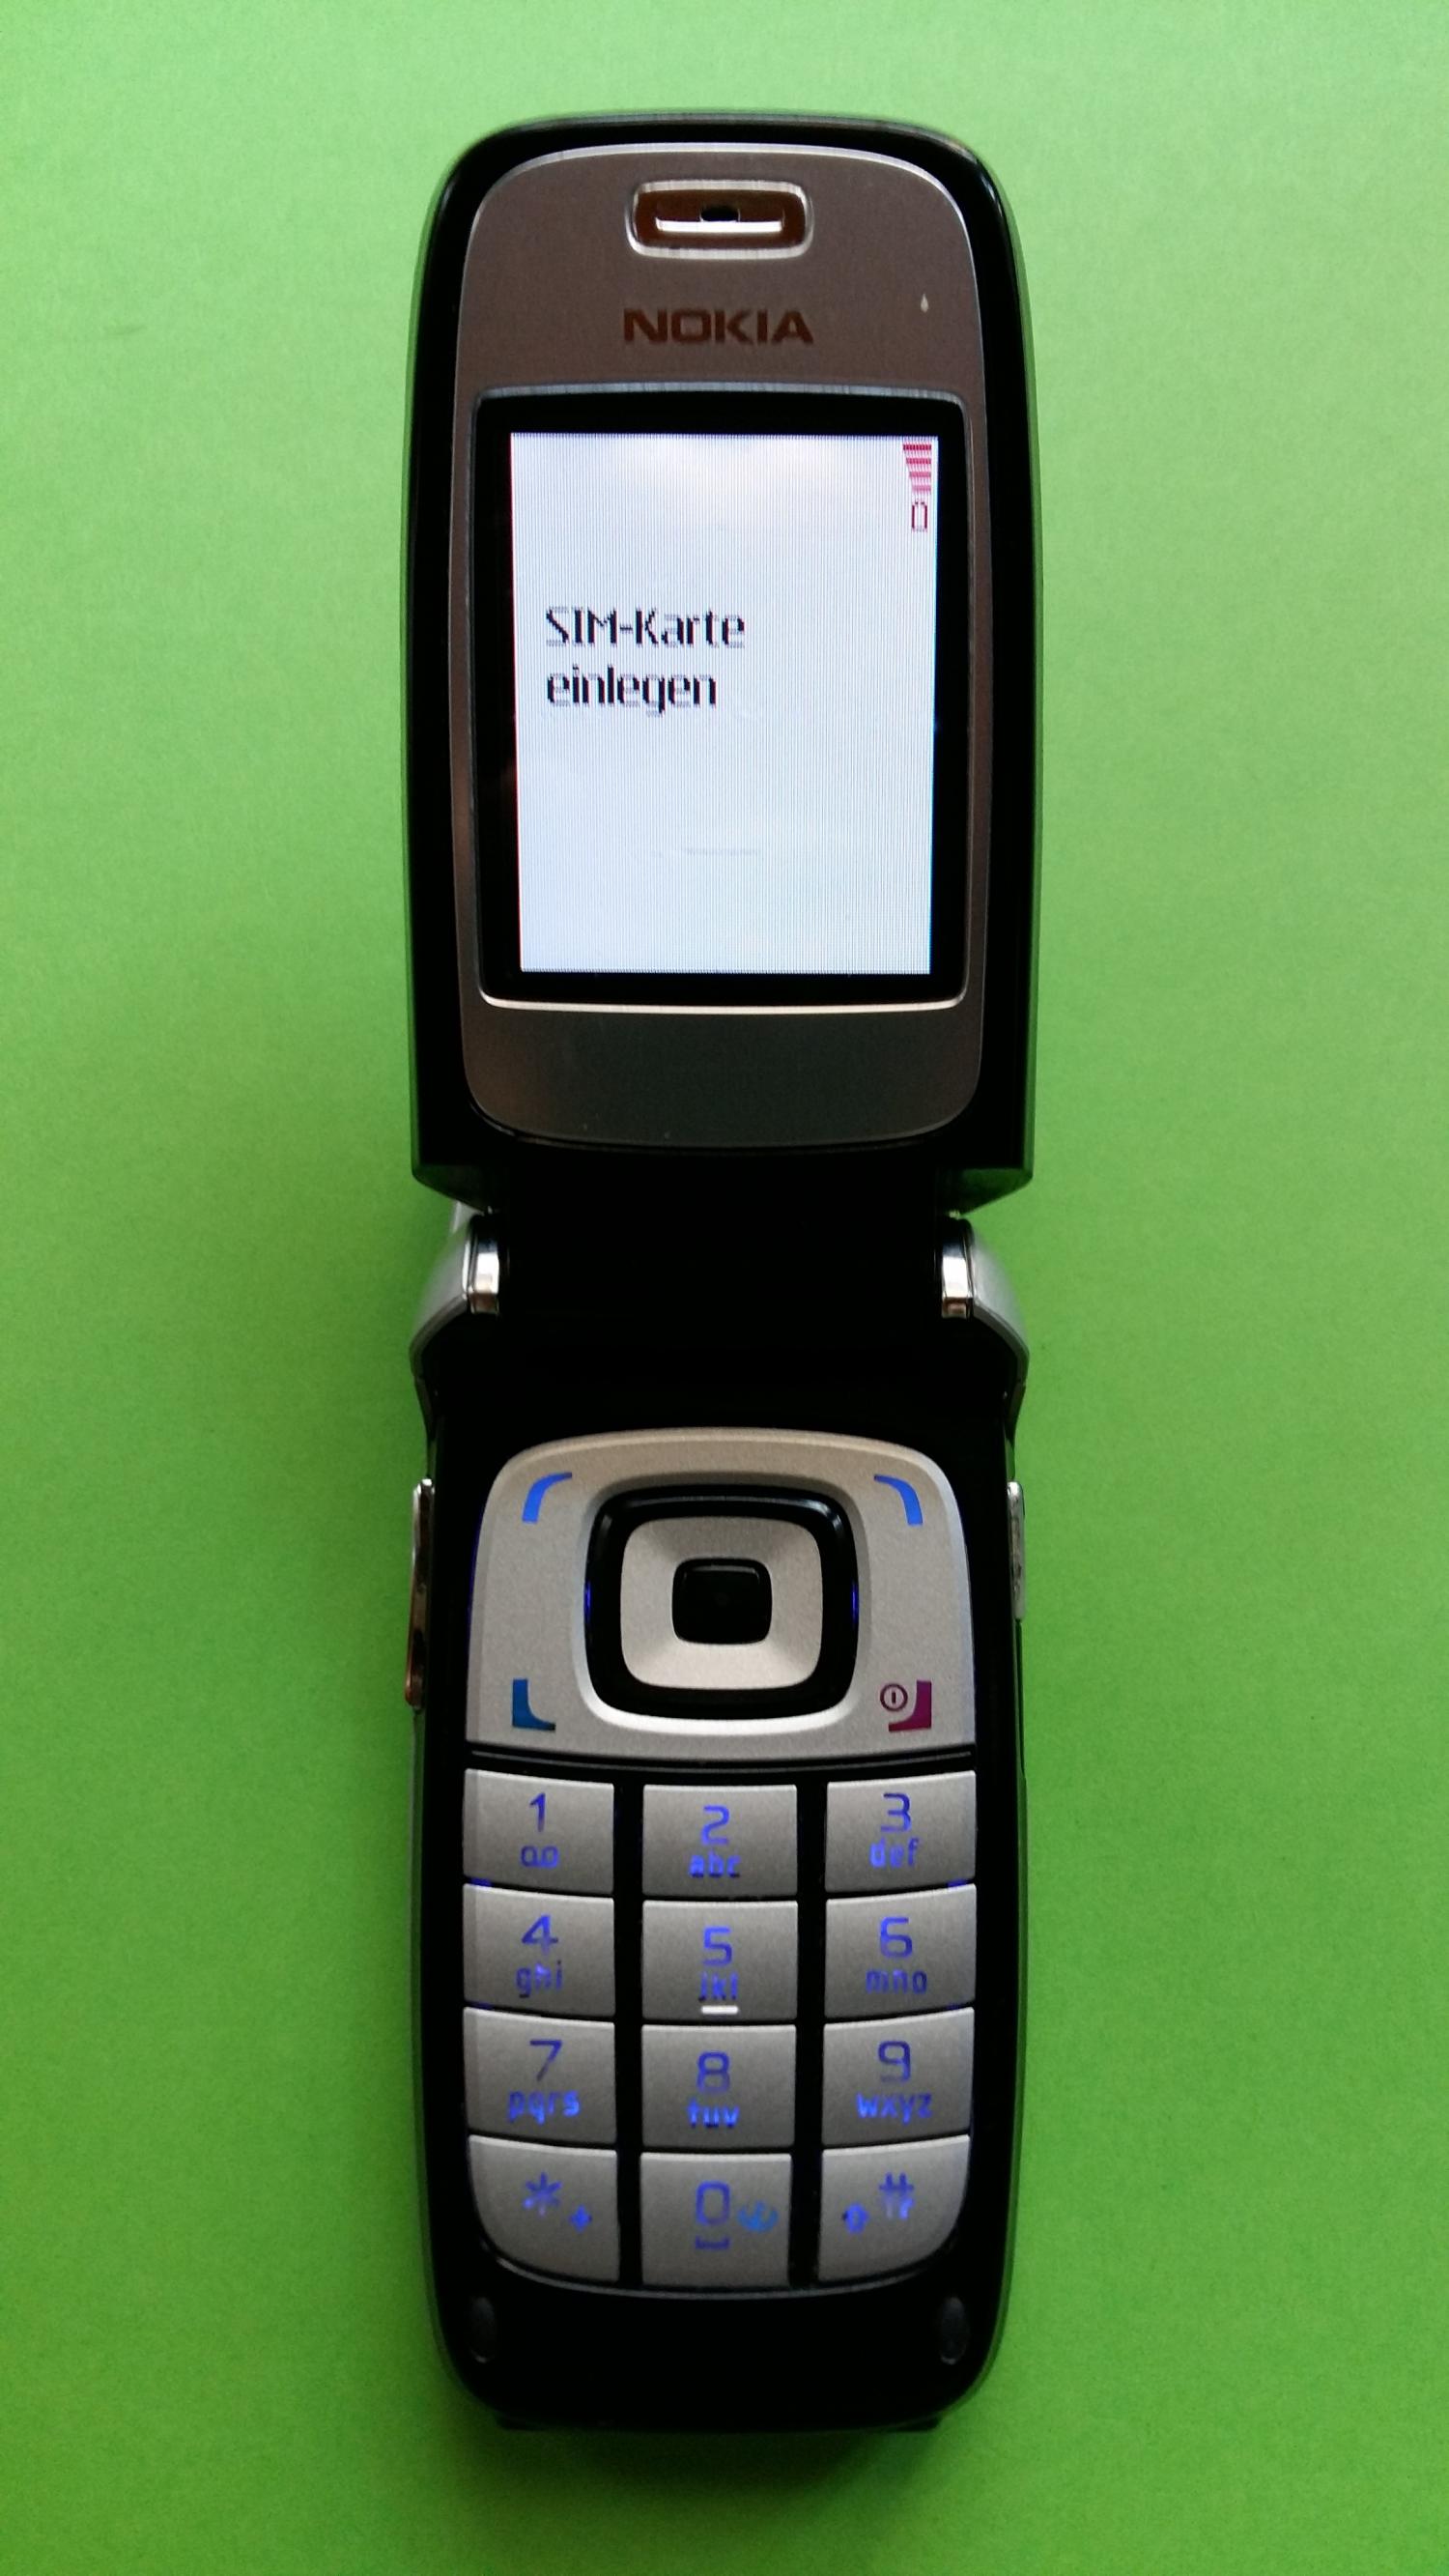 image-7323643-Nokia 6101 (7)2.jpg